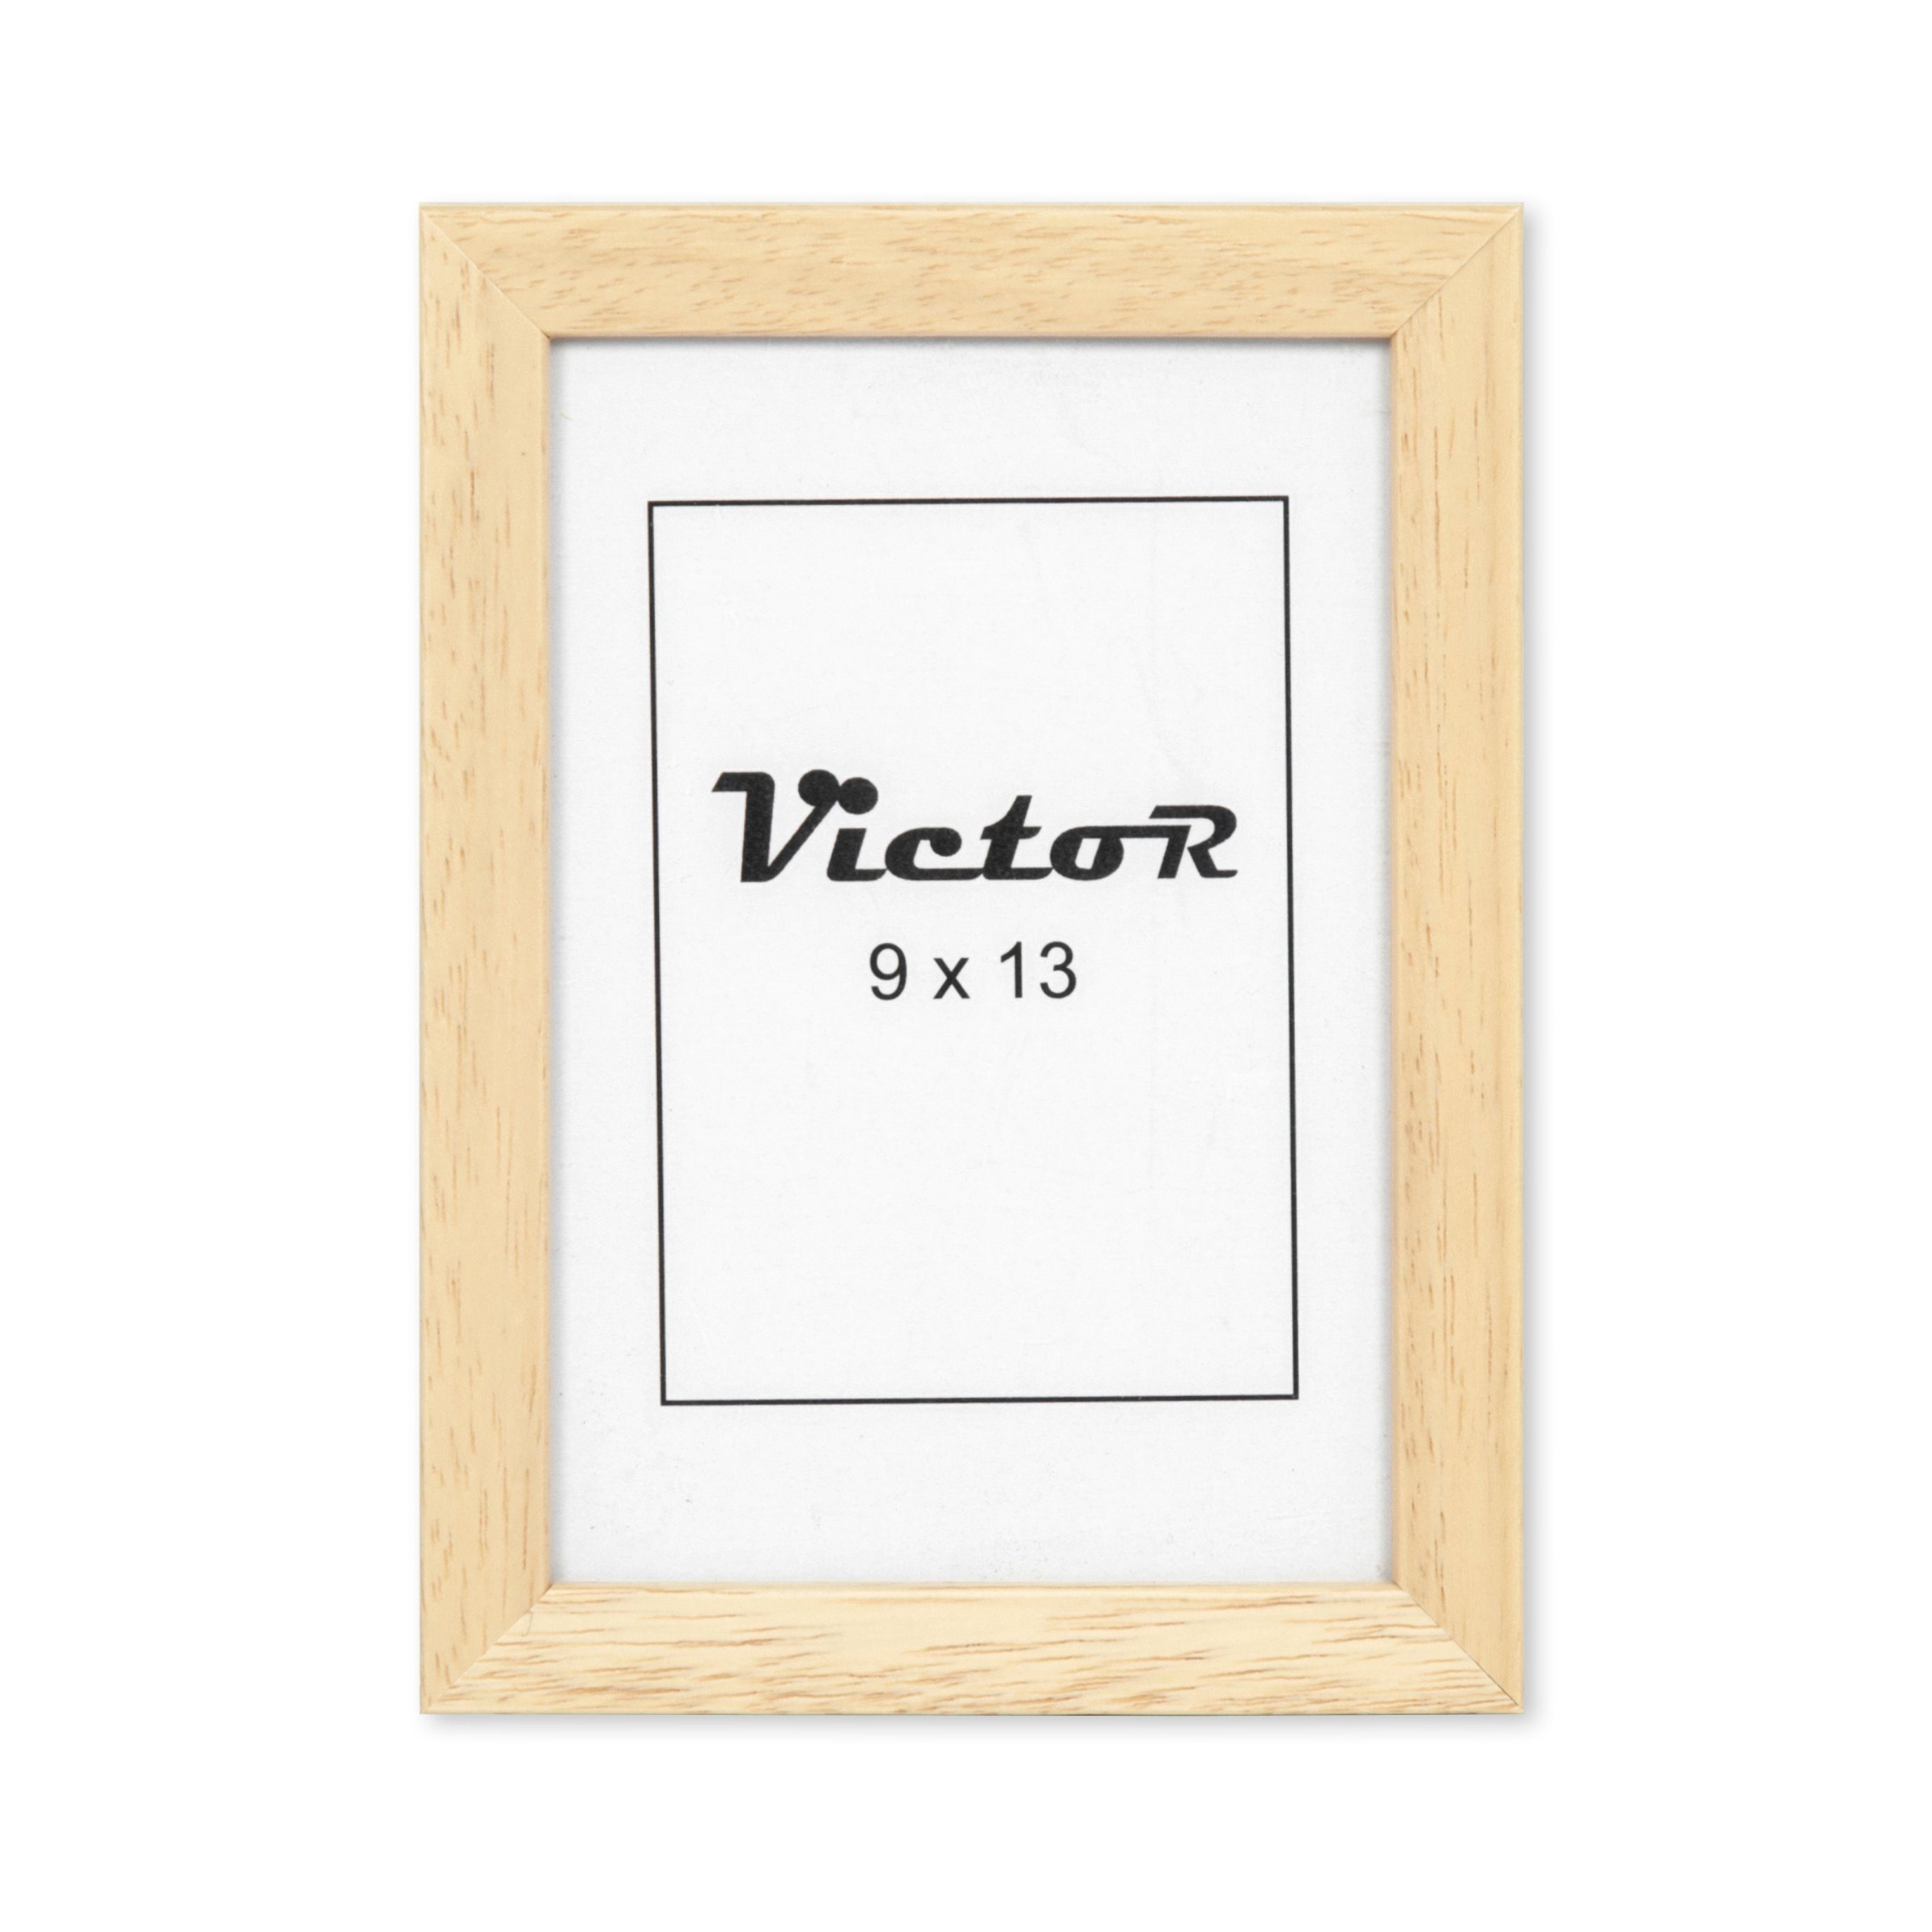 Victor (Zenith) Bilderrahmen Nolde, Bilderrahmen Bilderrahmen Beige 9x13 cm, Holz